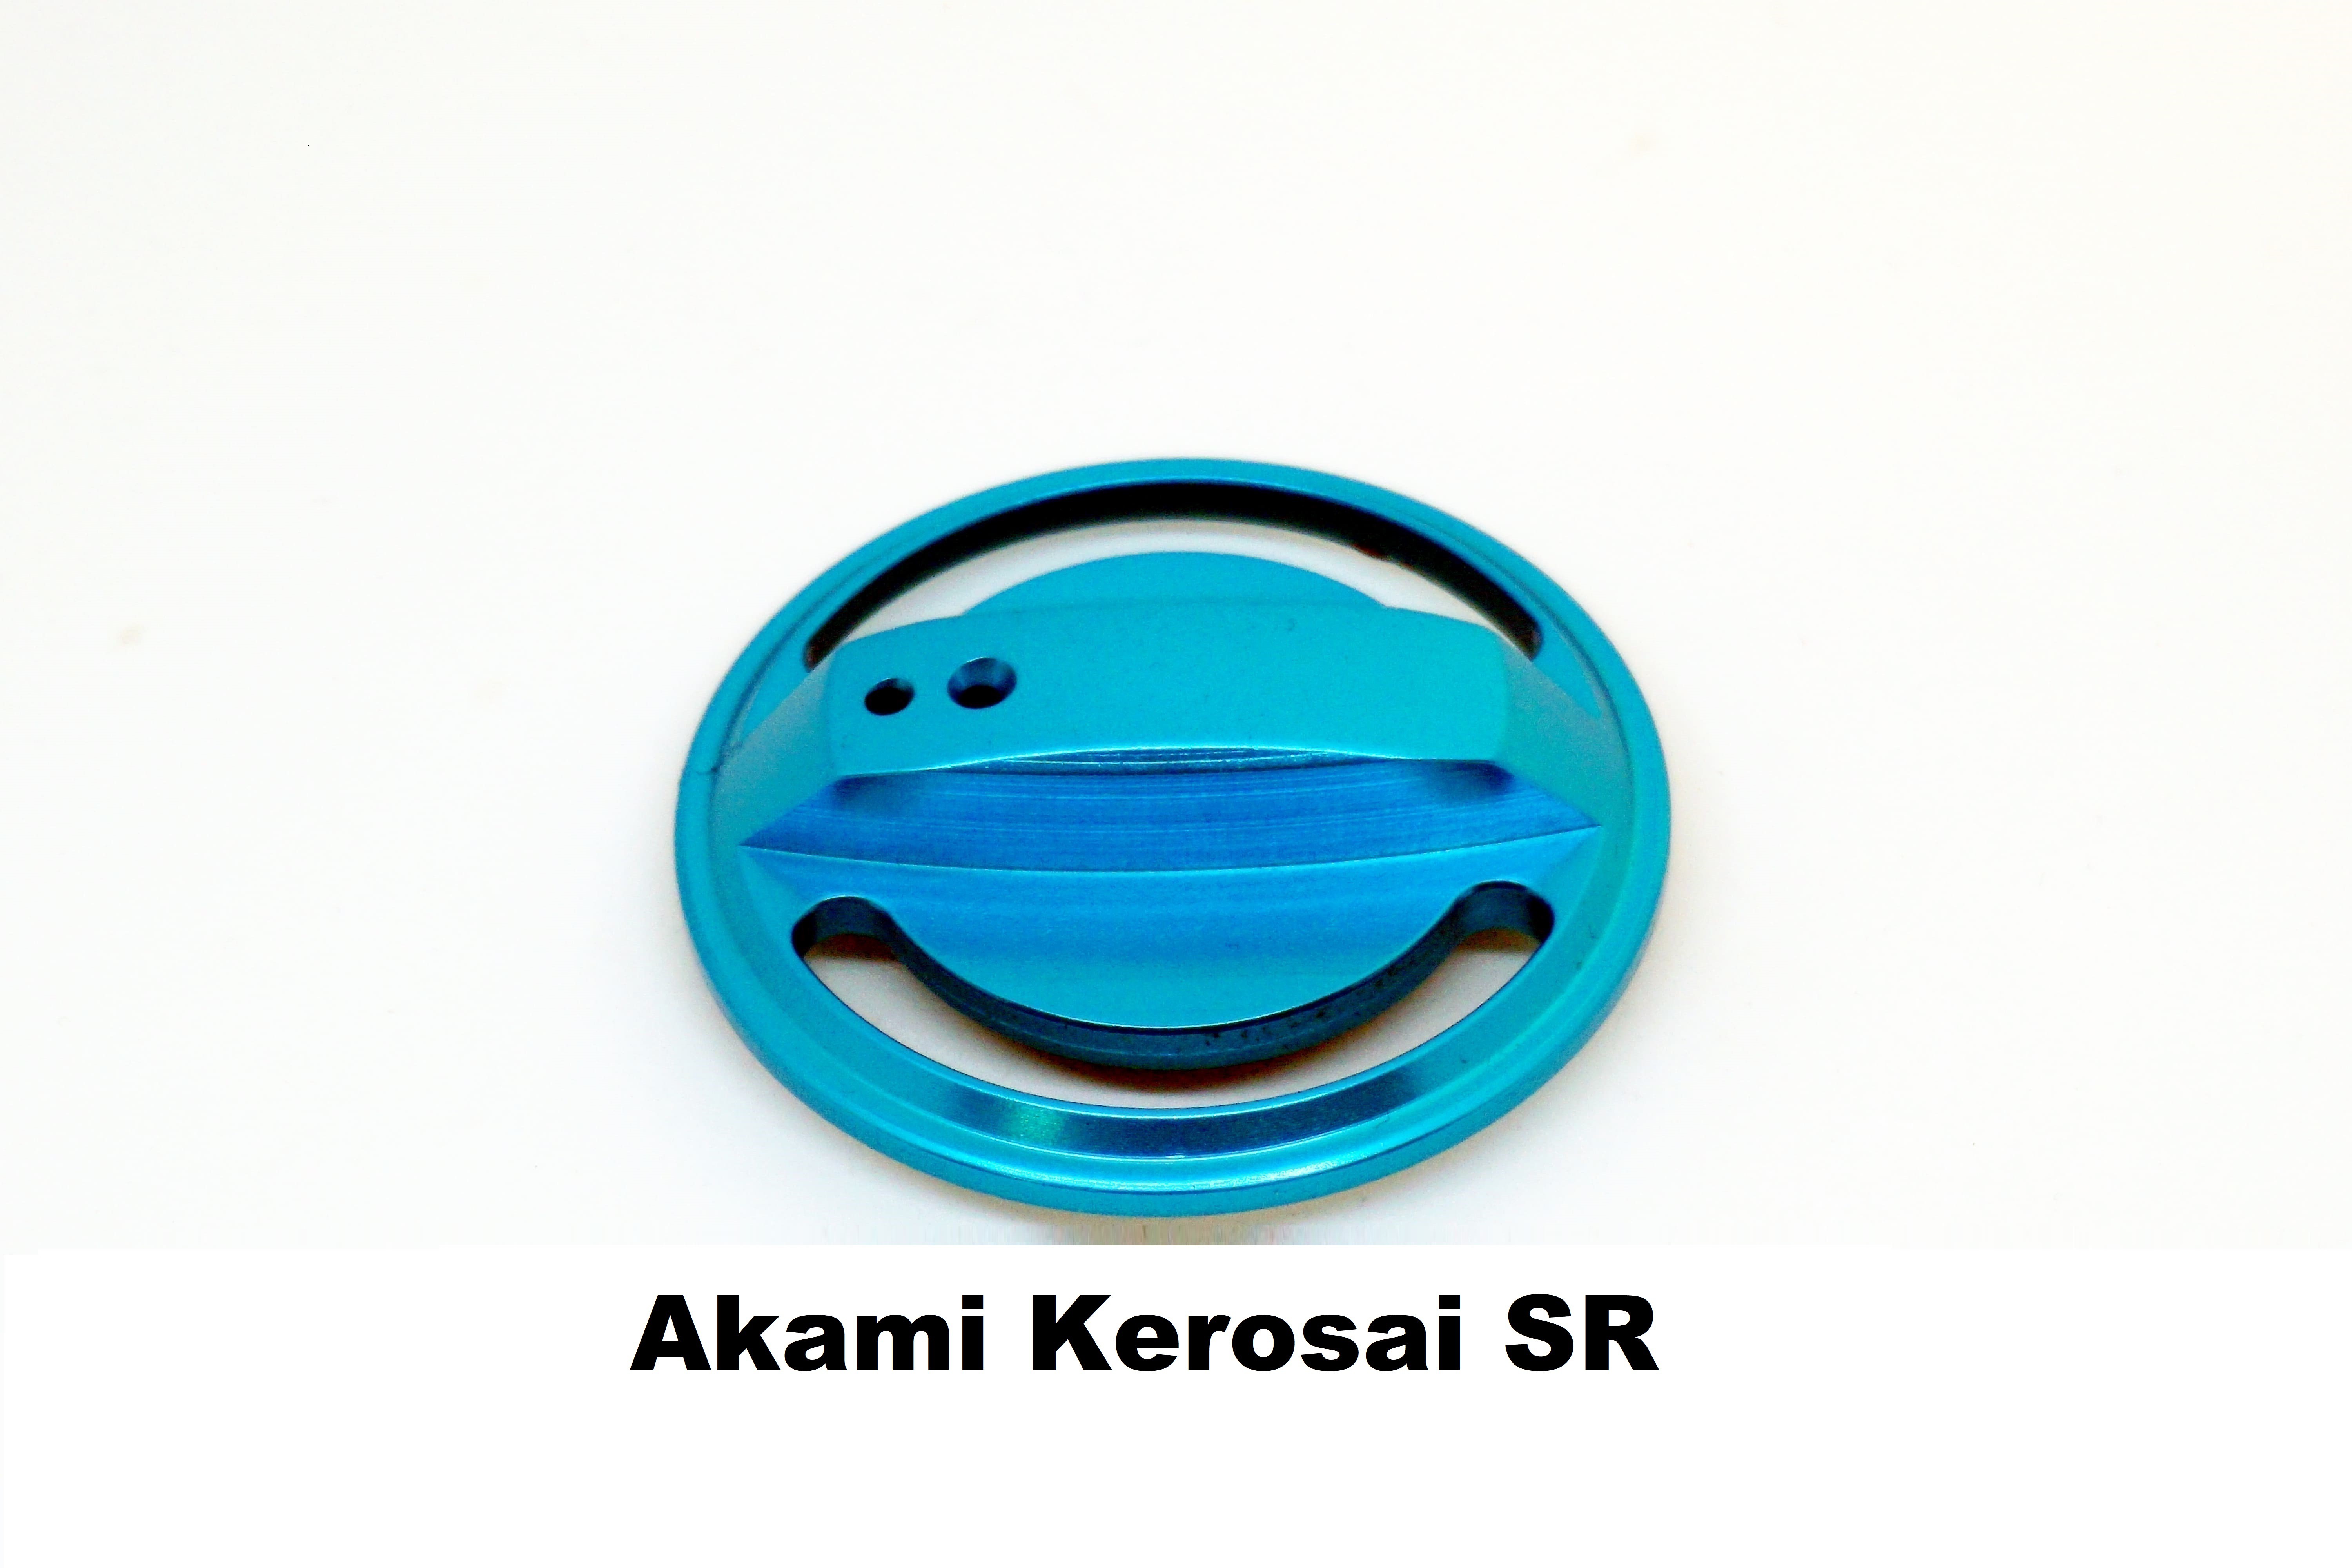 Drag Knob for Akami Kerosai SR